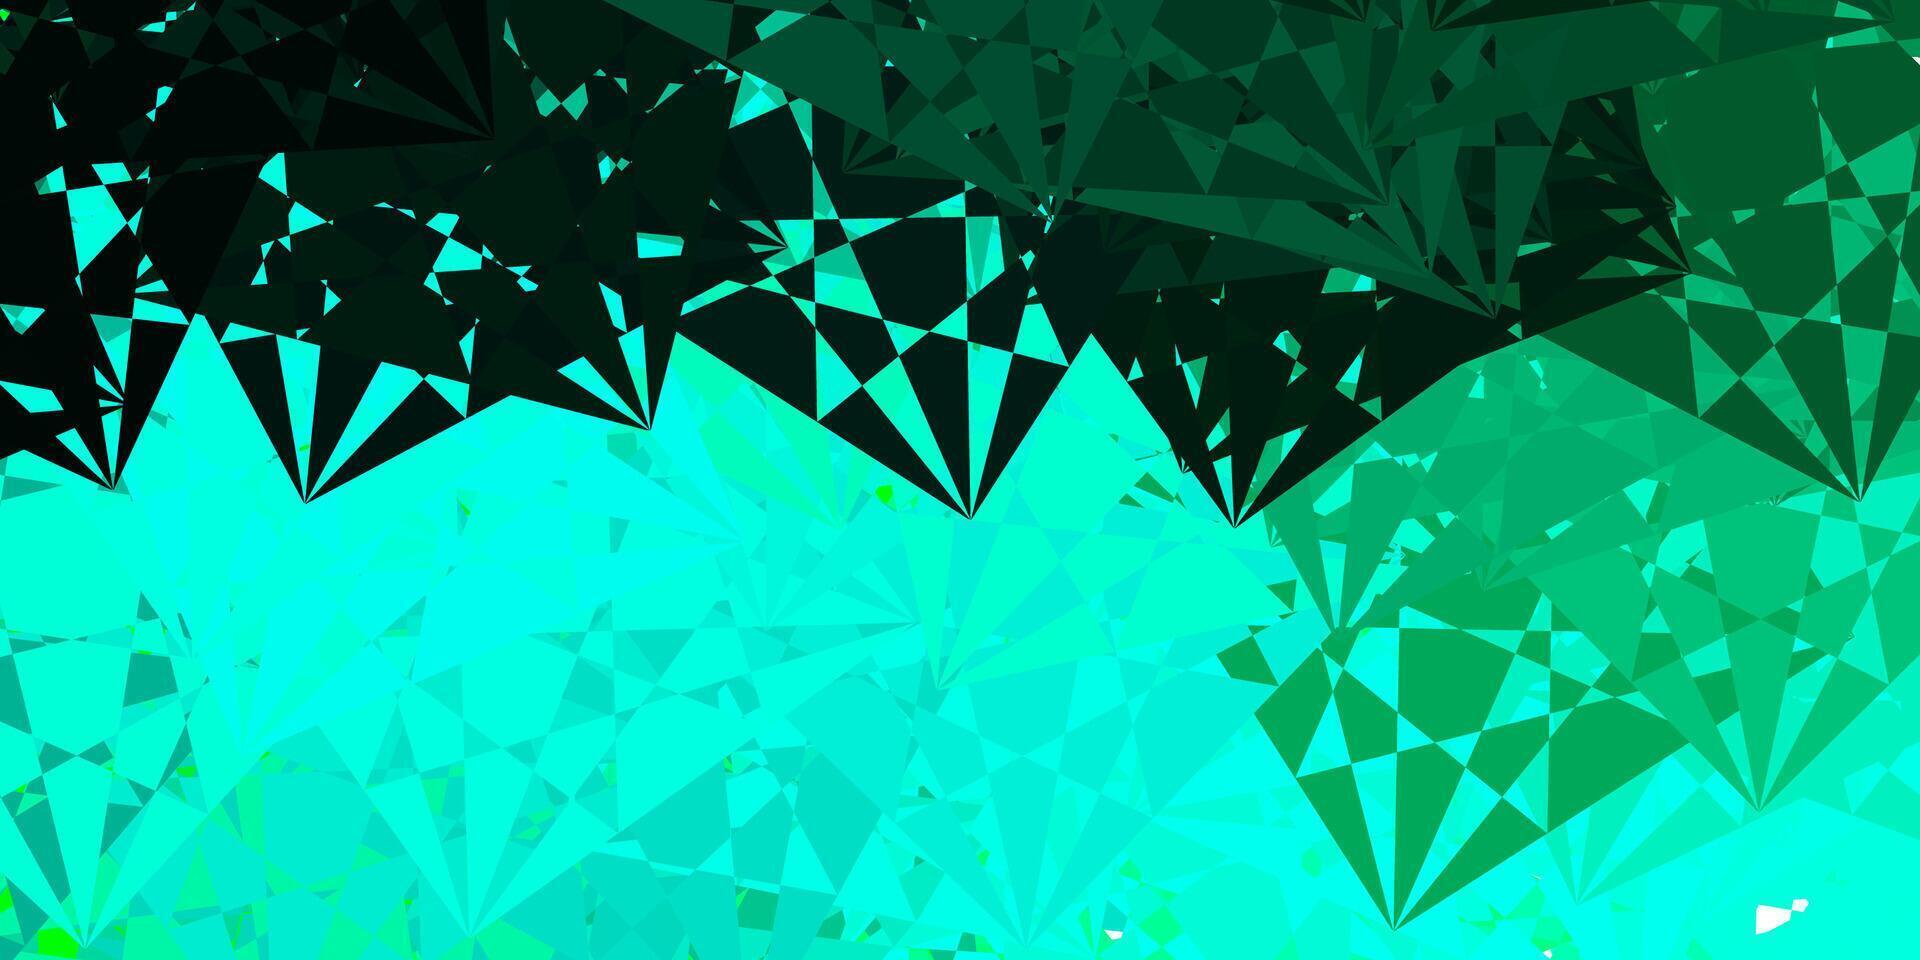 padrão de vetor verde claro com formas abstratas.